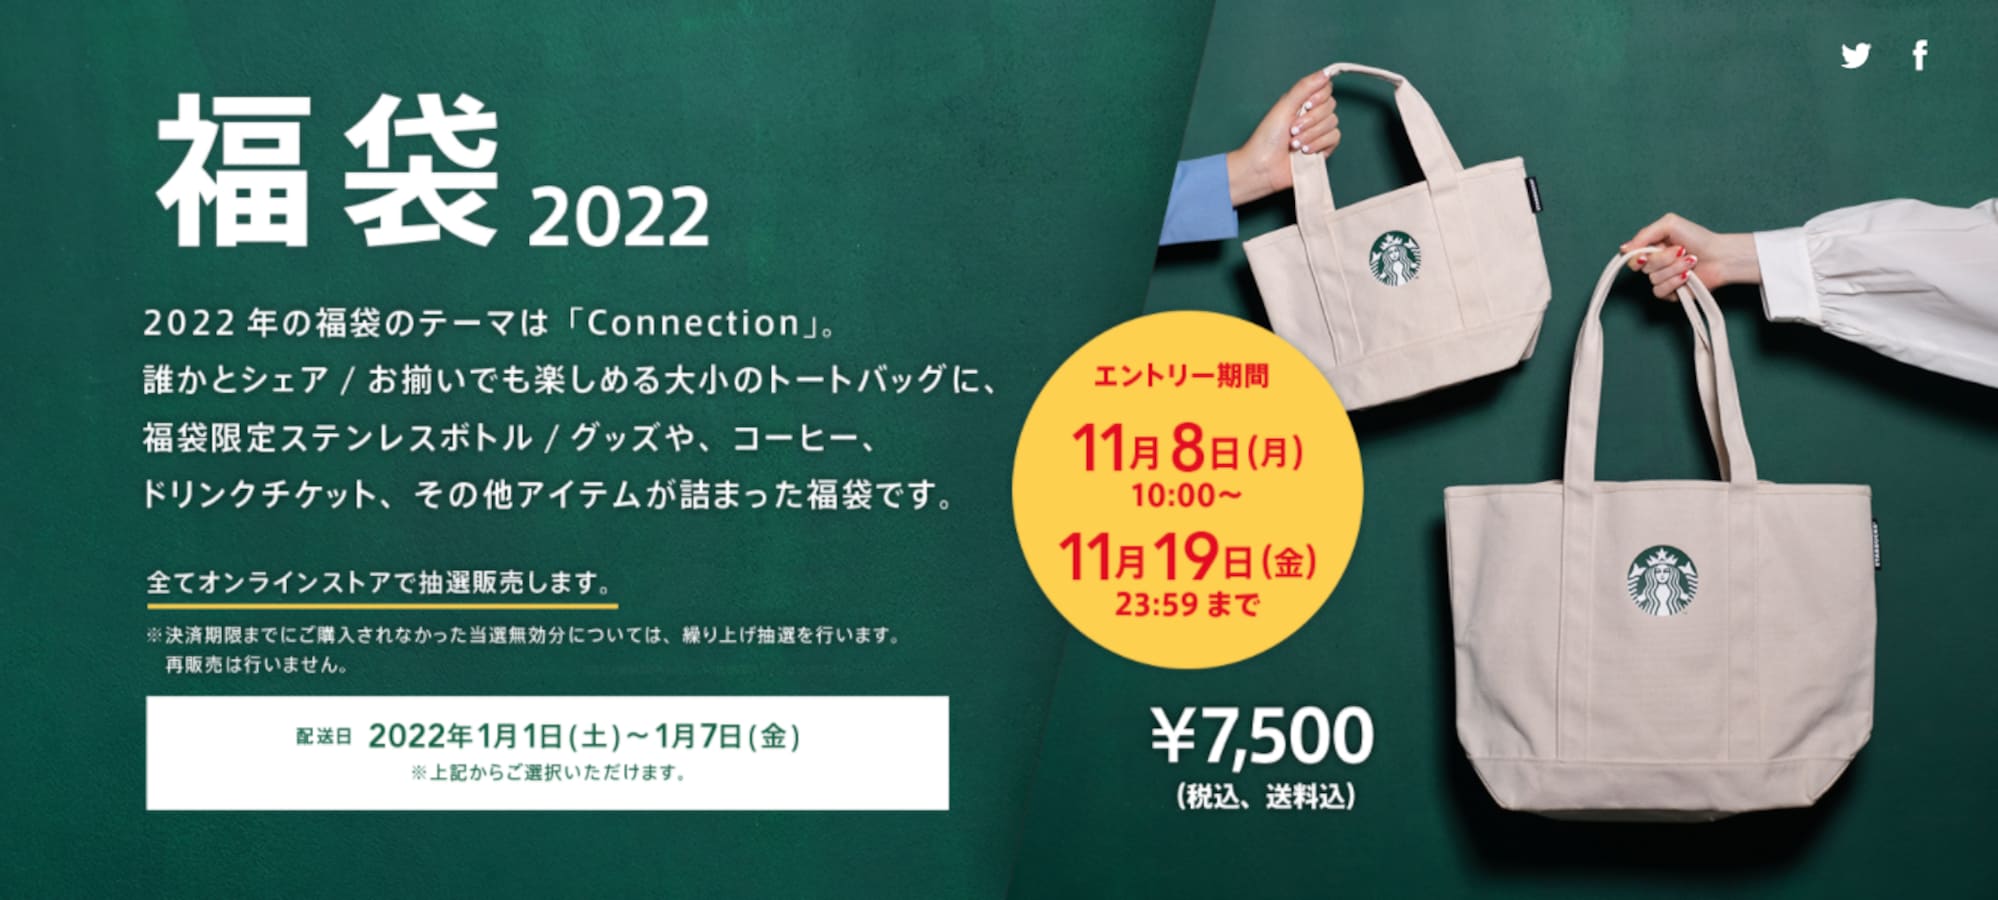 「スタバの福袋2022」は、オンラインでの抽選販売に。エントリー 